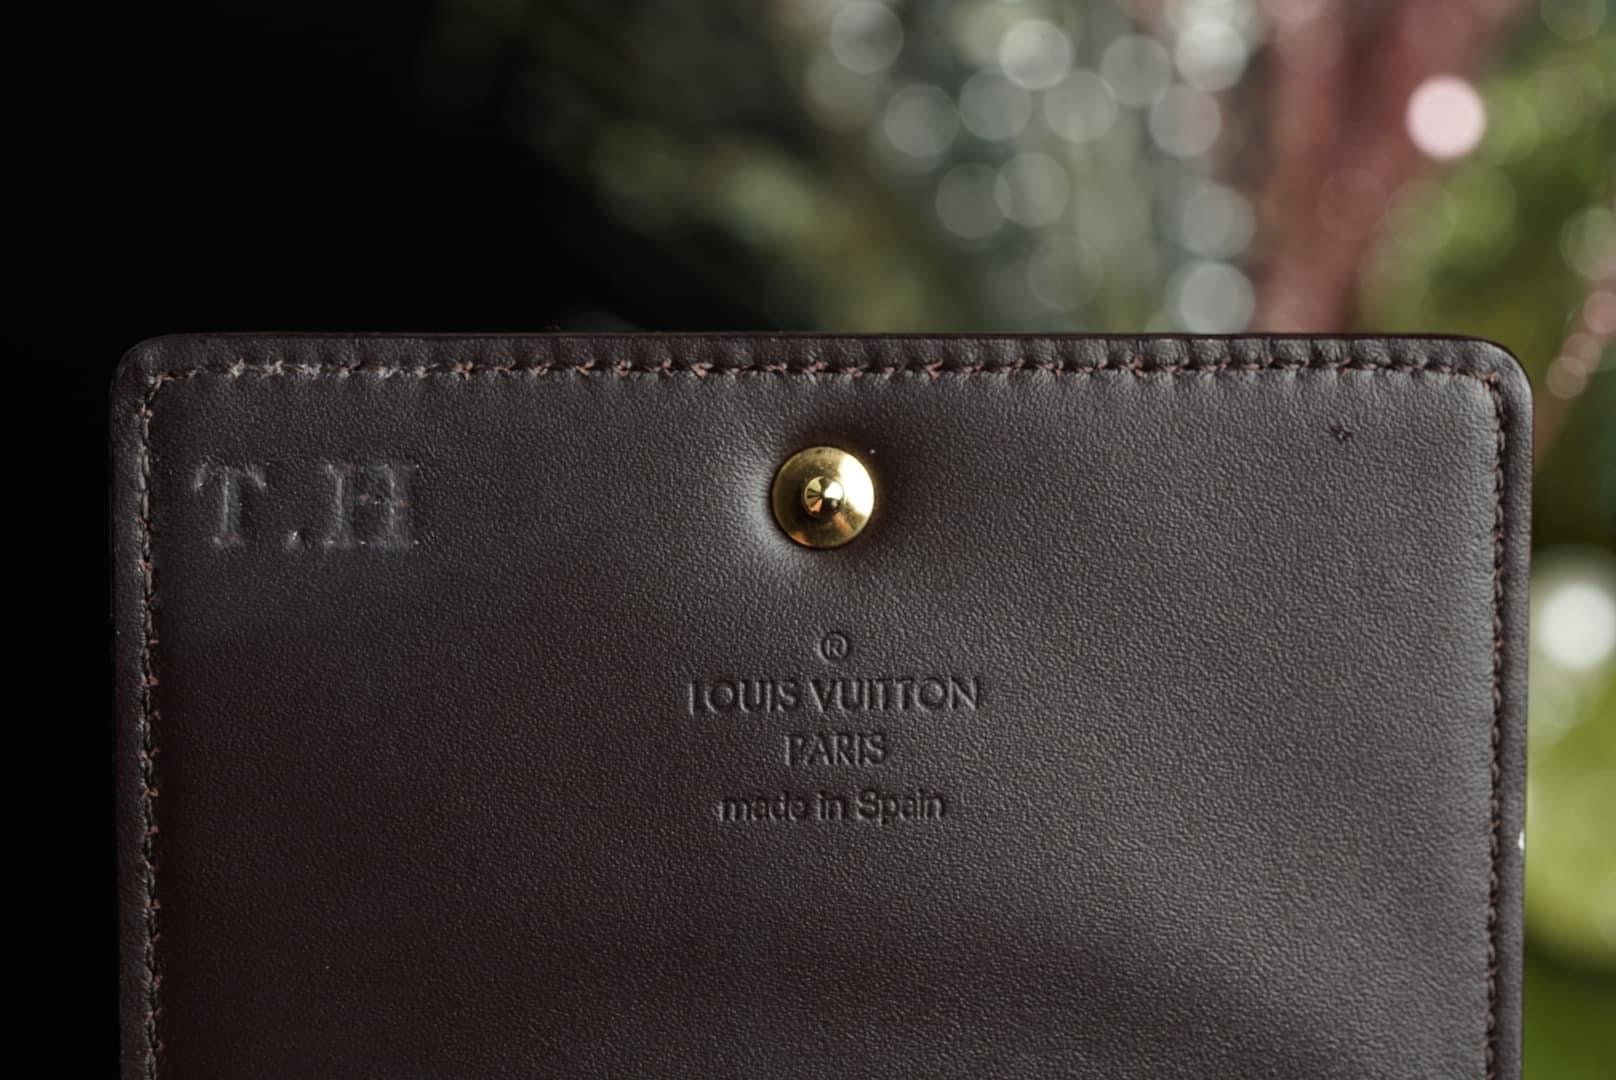 AUTHENTIC Louis Vuitton Vernis Trifold Wallet